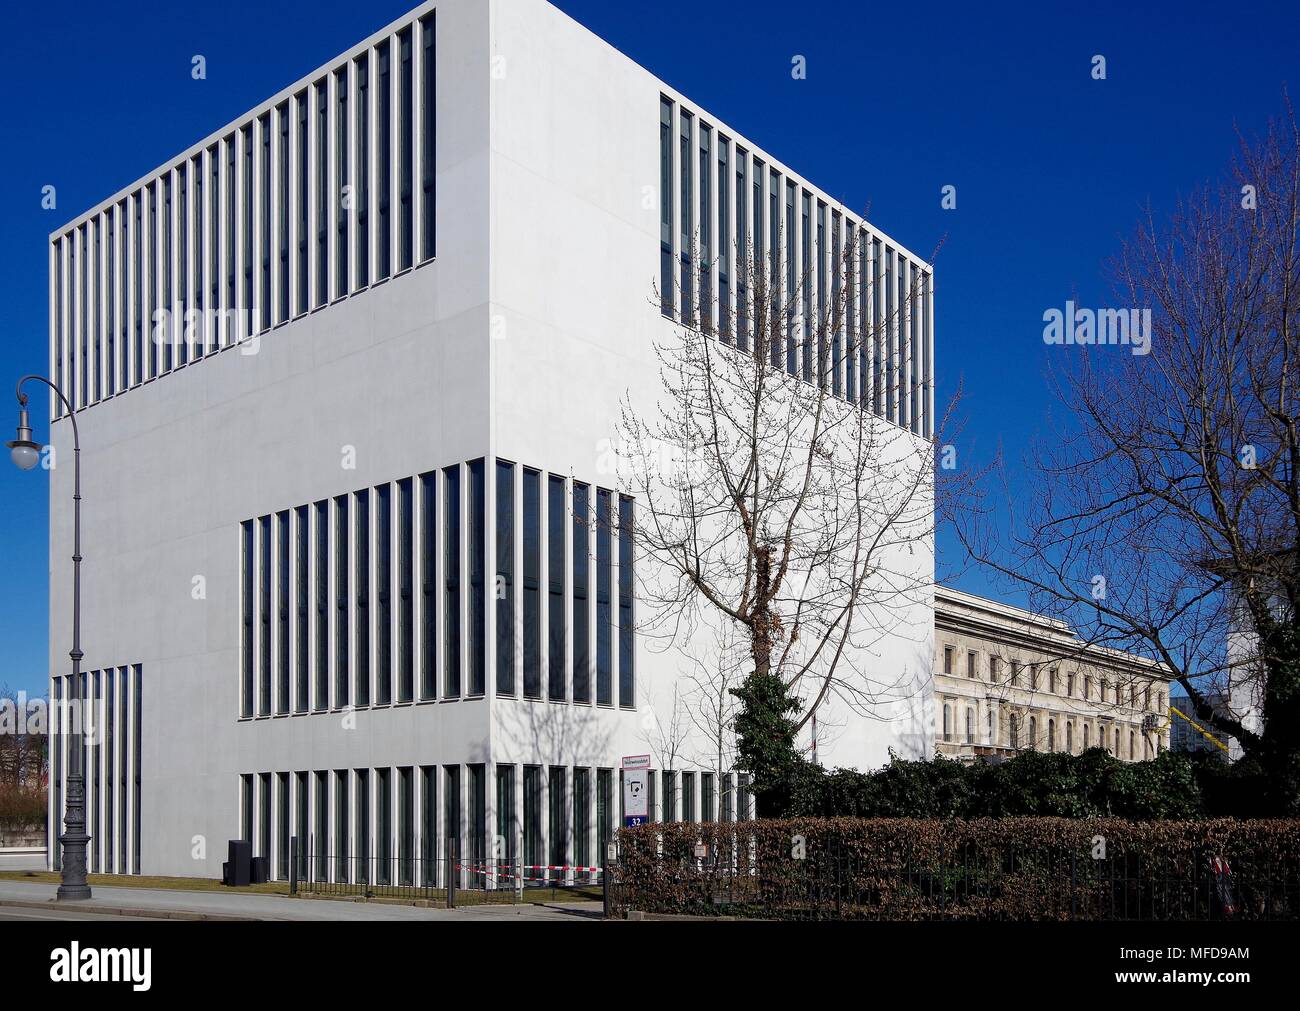 München Dokumentationszentrum für die Geschichte des Nationalsozialismus, ein Museum dokumentiert die Geschichte des NS-Regimes in Deutschland Stockfoto